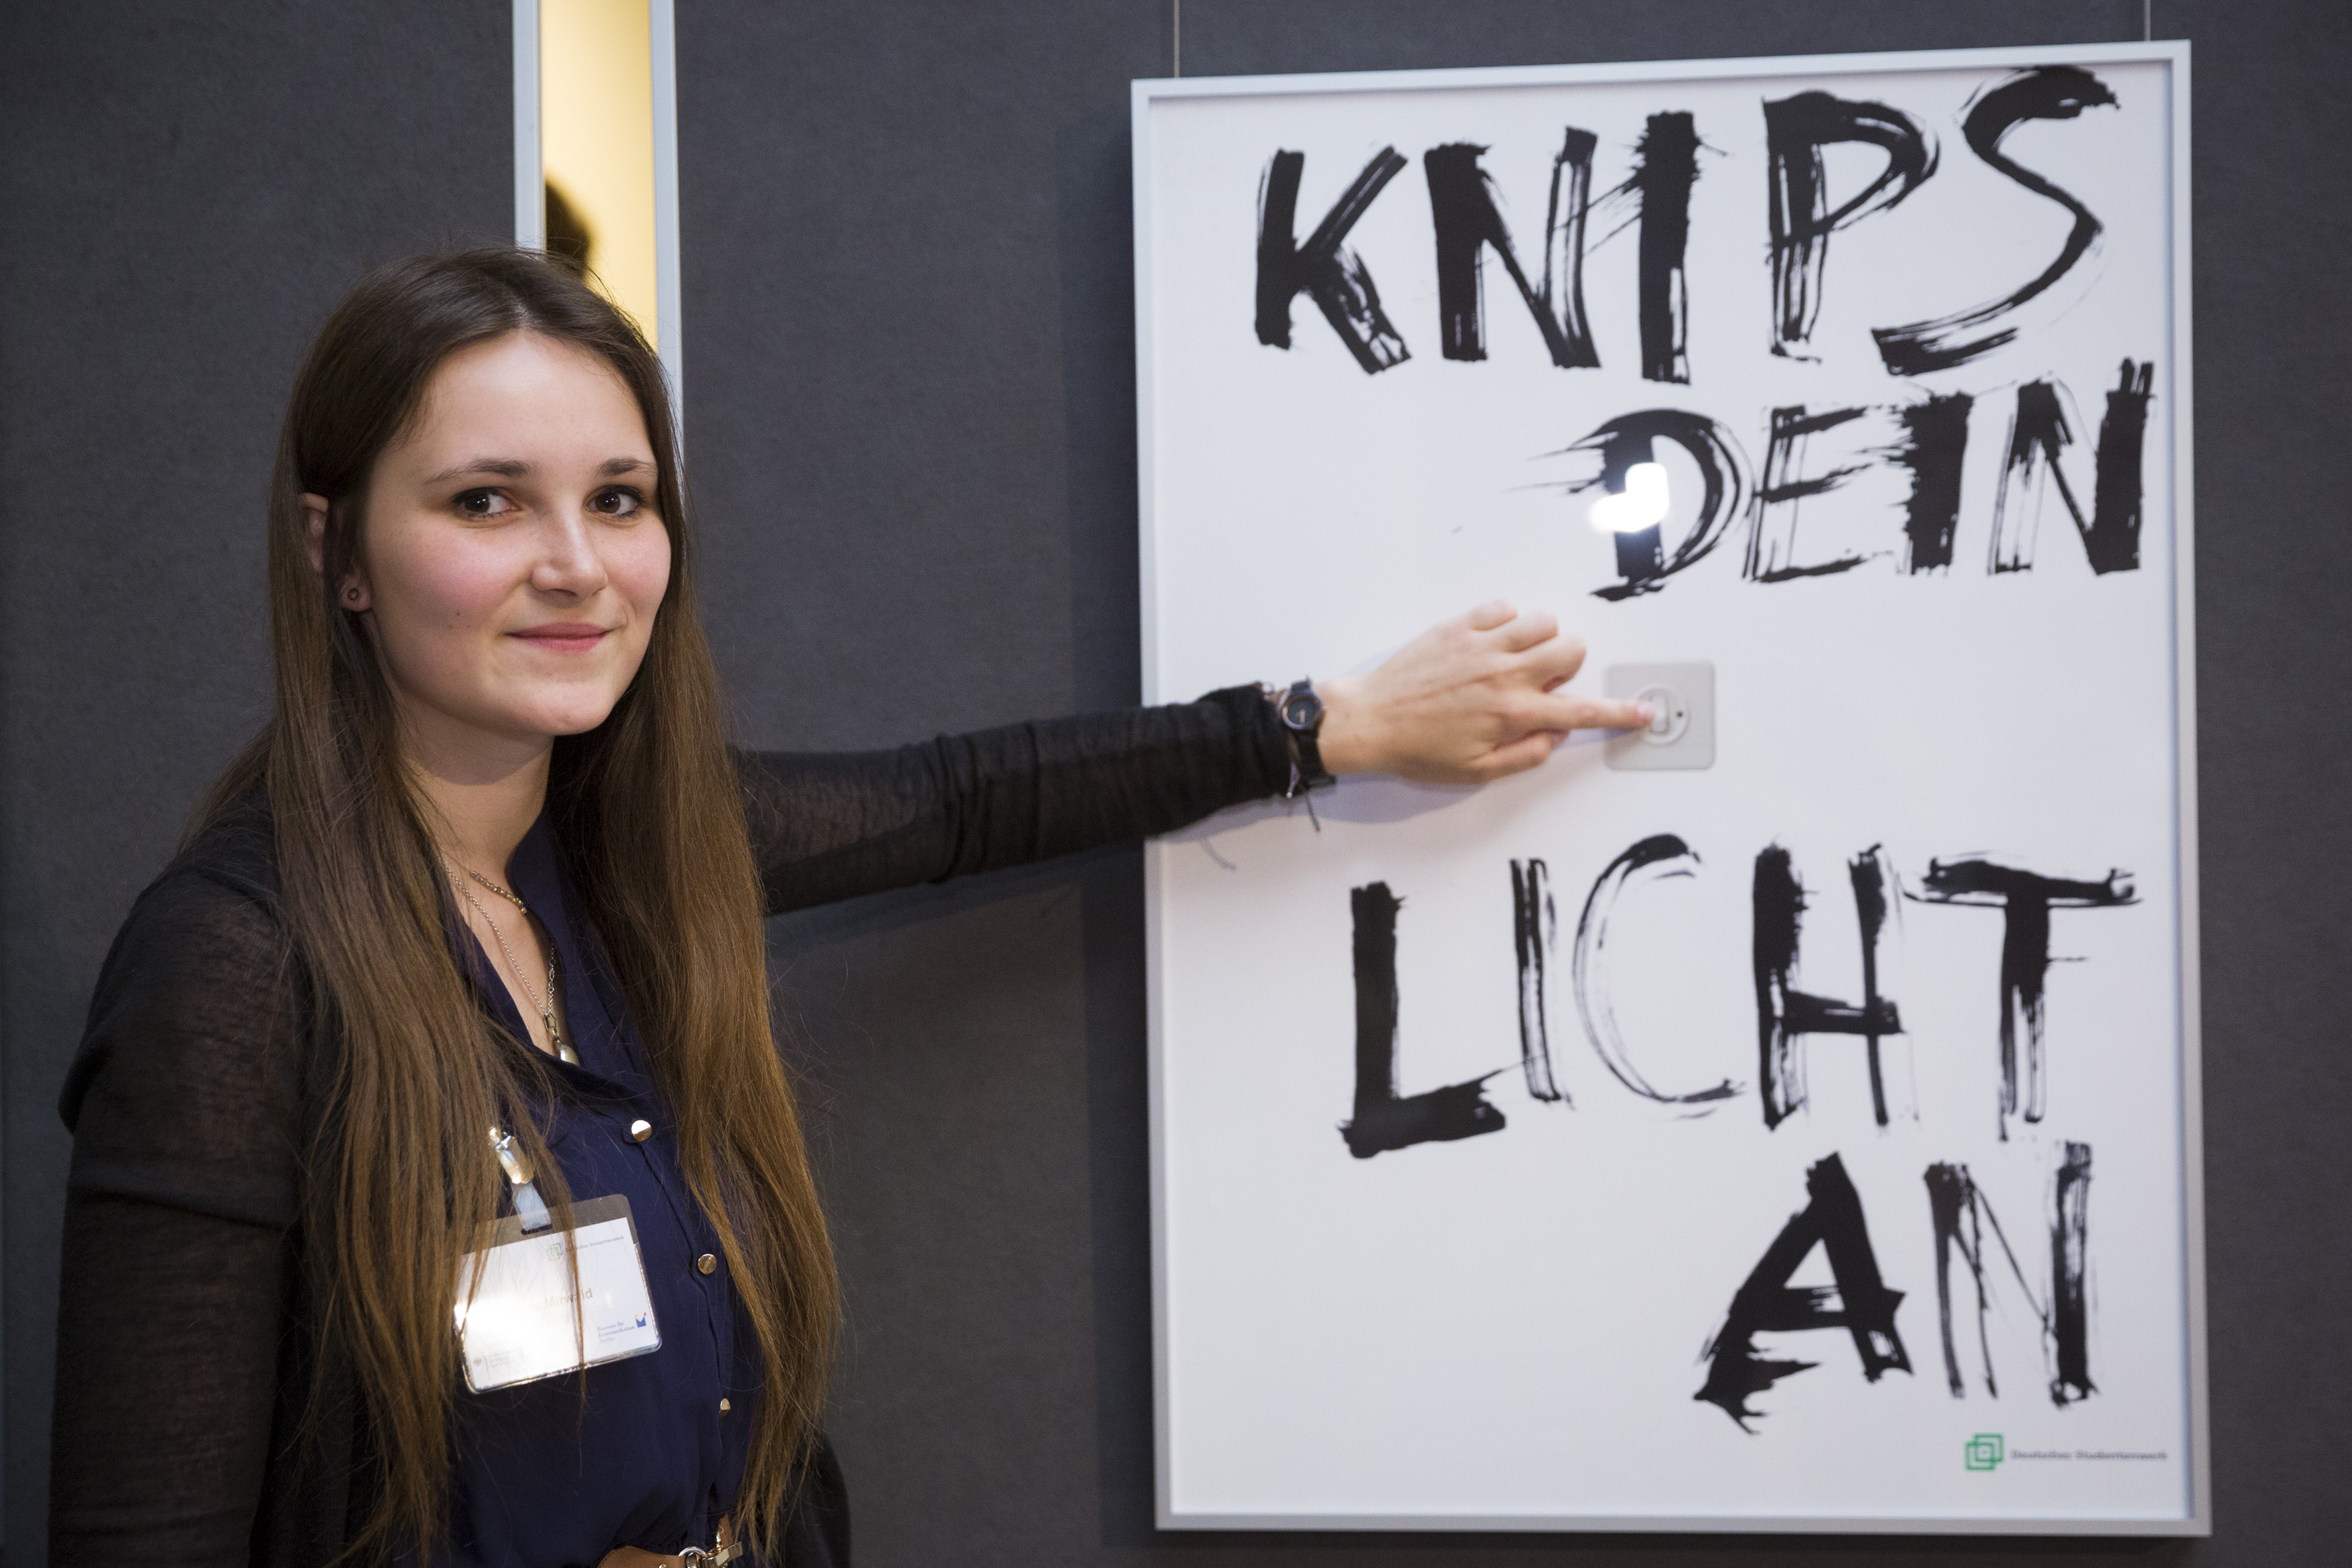 Eine junge Frau neben dem erstplatzierten Plakat mit dem Schriftzug "Knips dein Licht an"